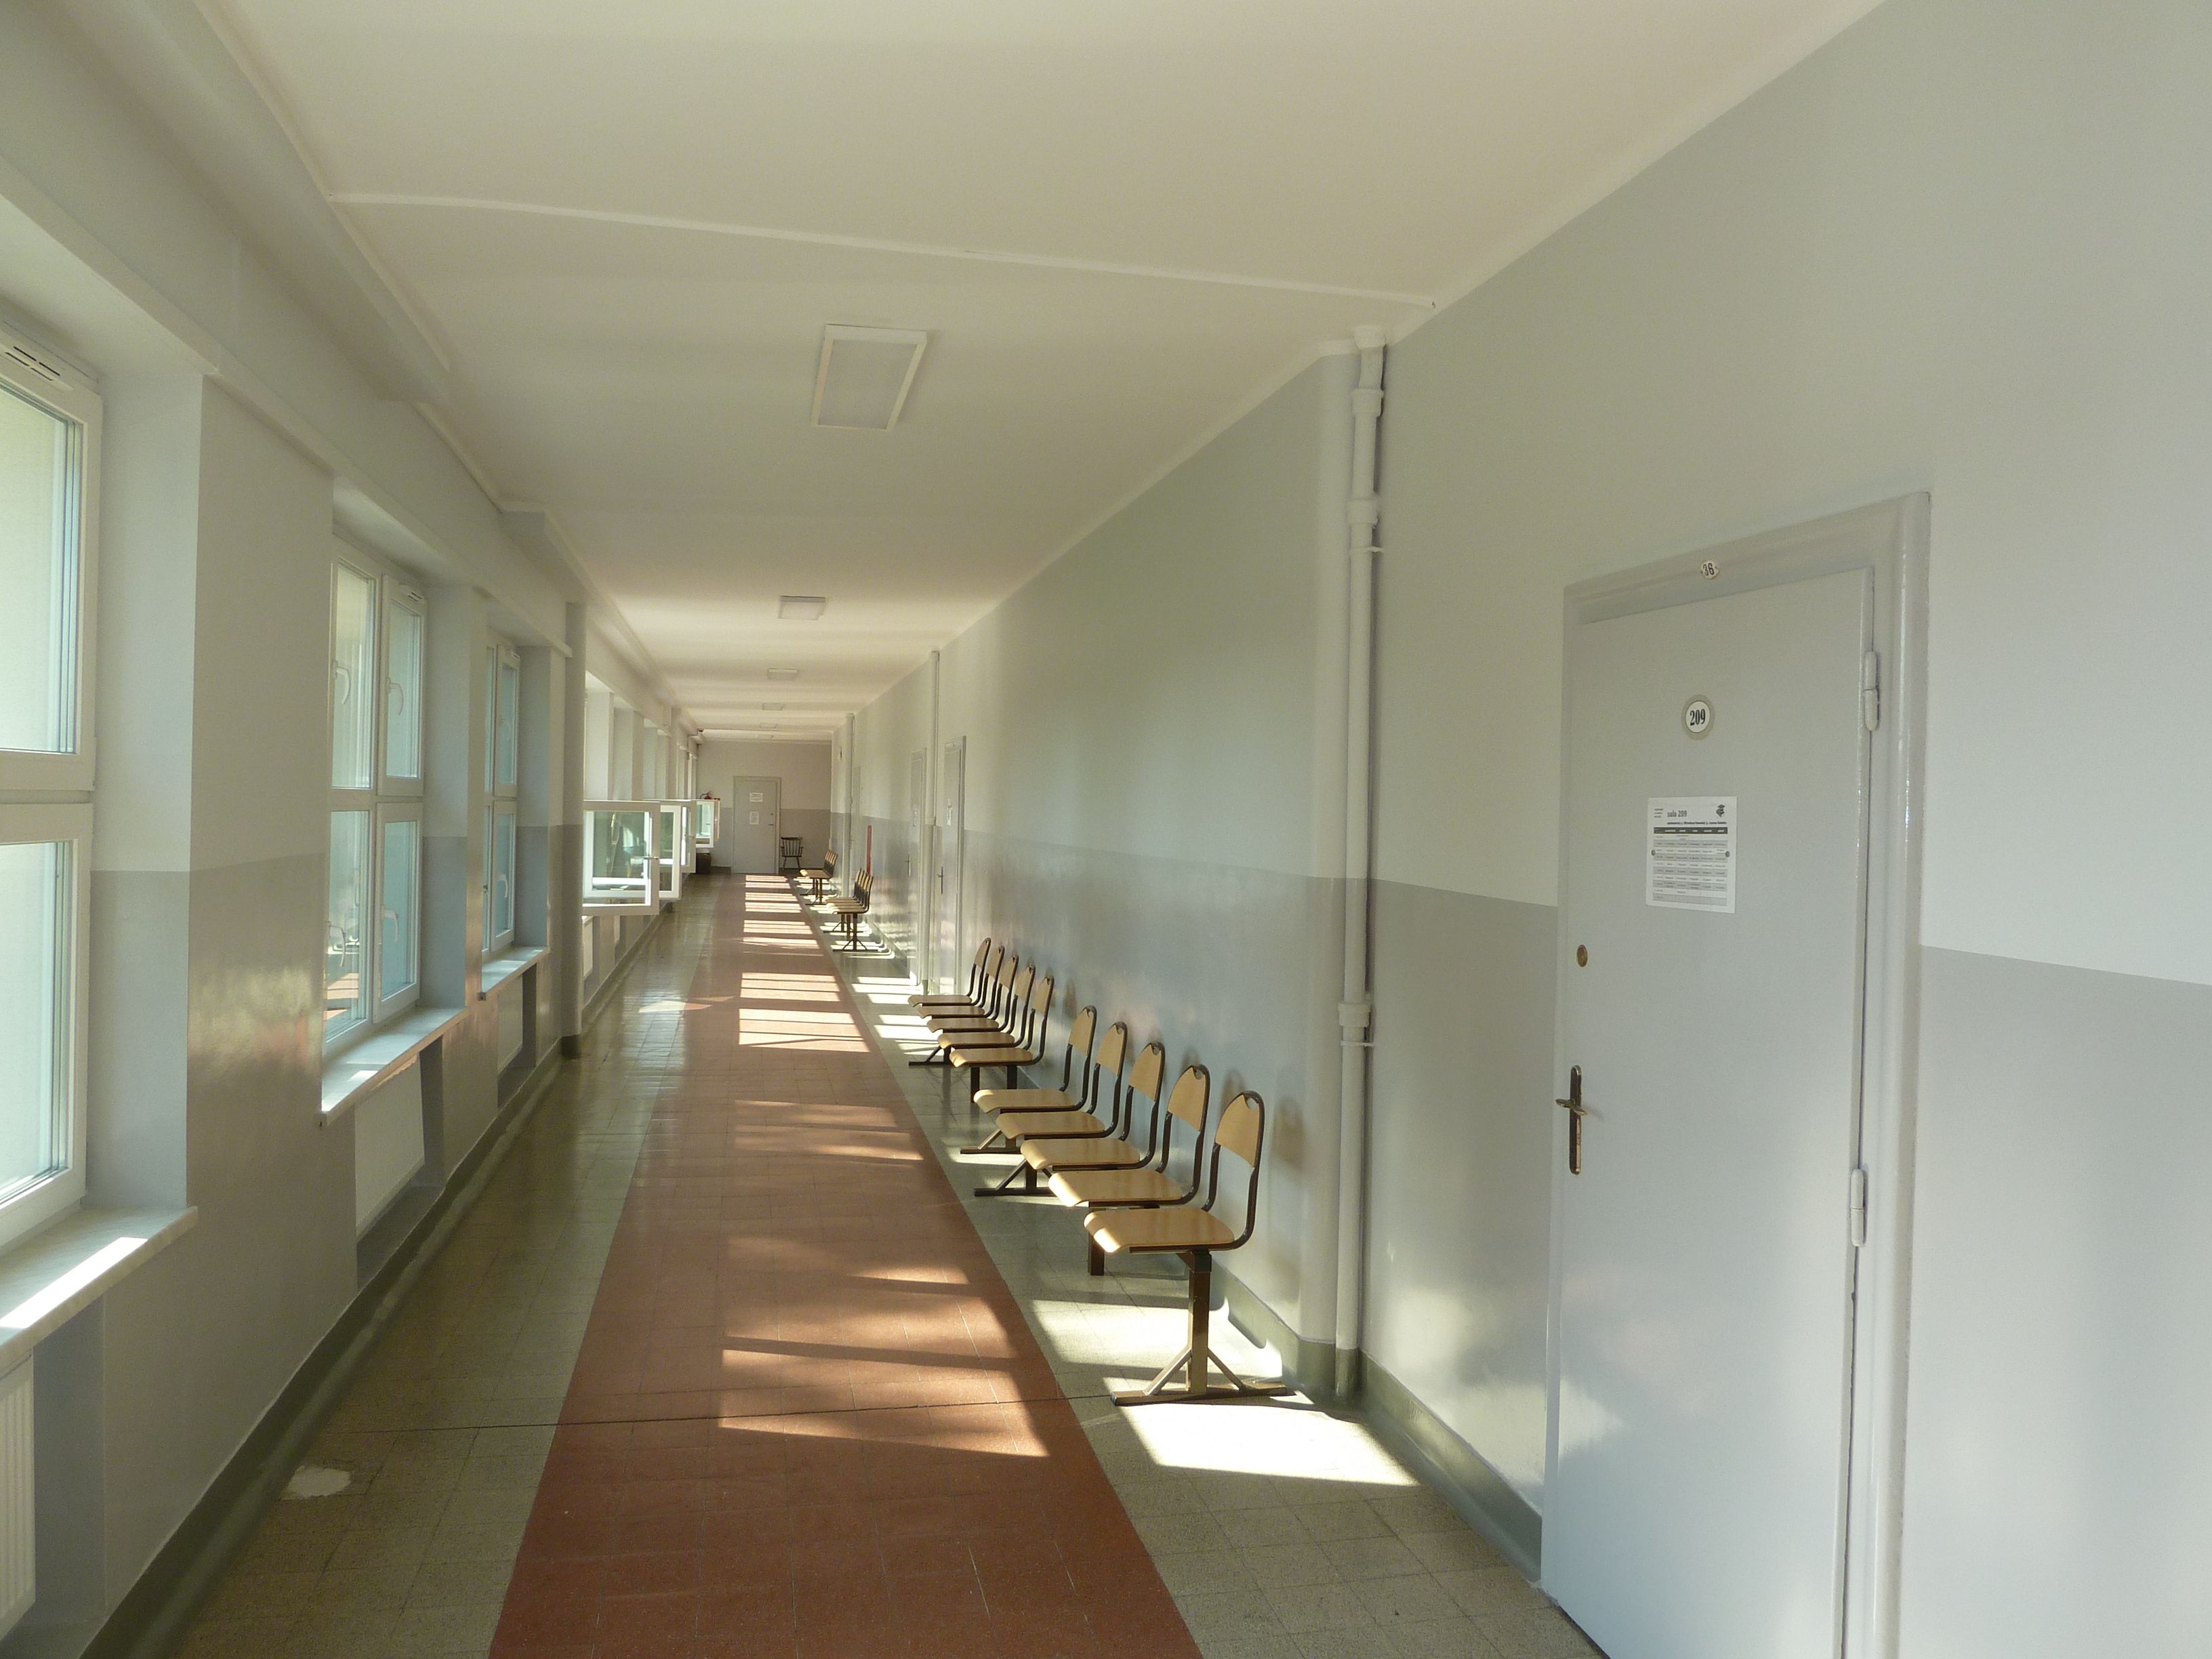 Korytarz szkolny, po prawej przy ścianie krzesła